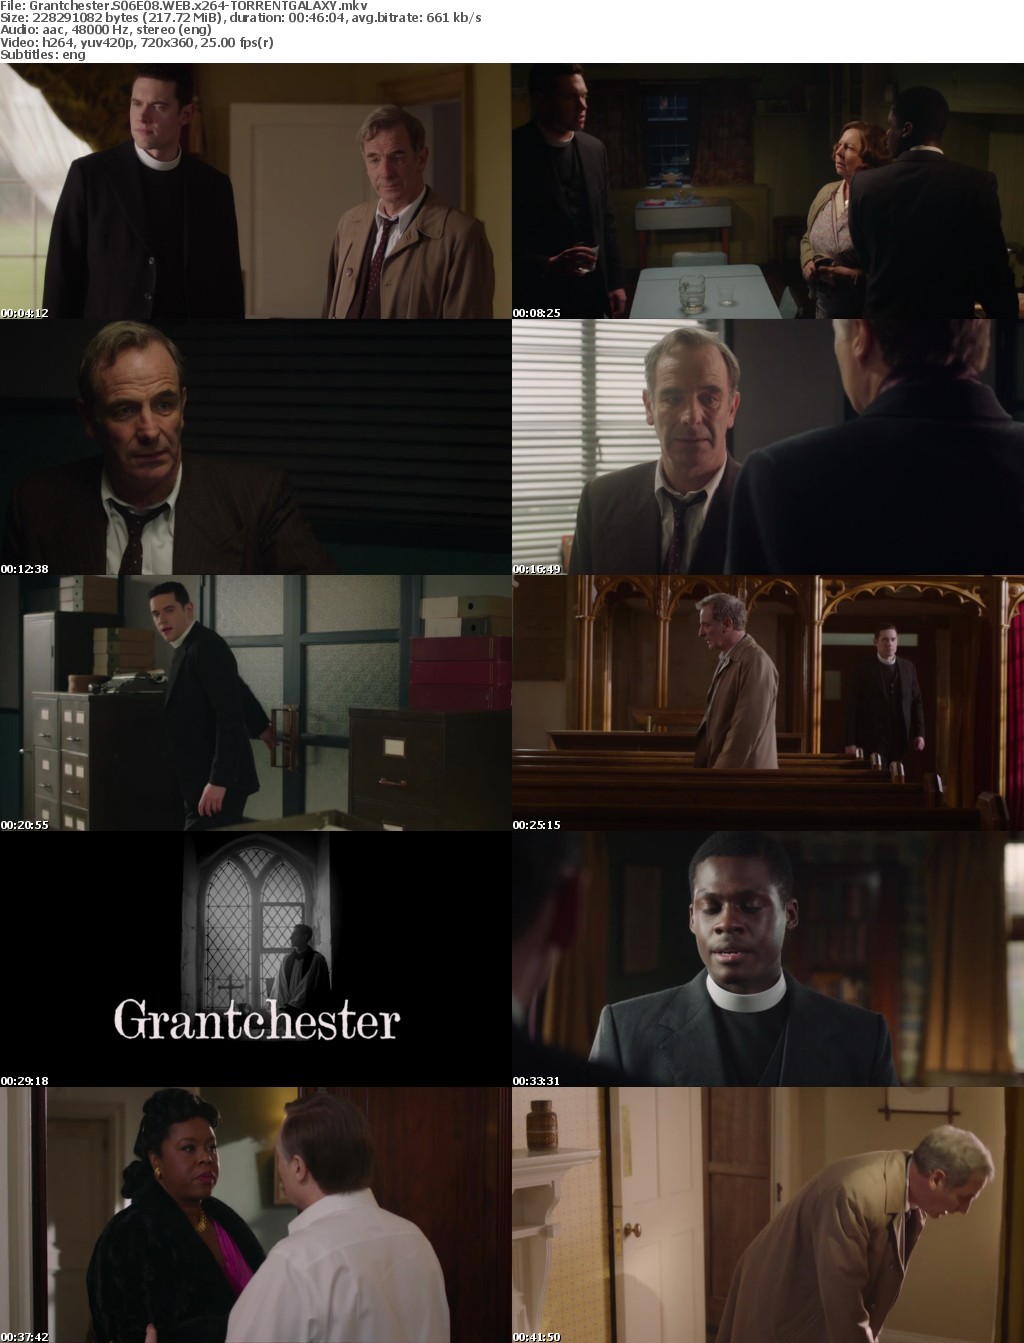 Grantchester S06E08 WEB x264-GALAXY